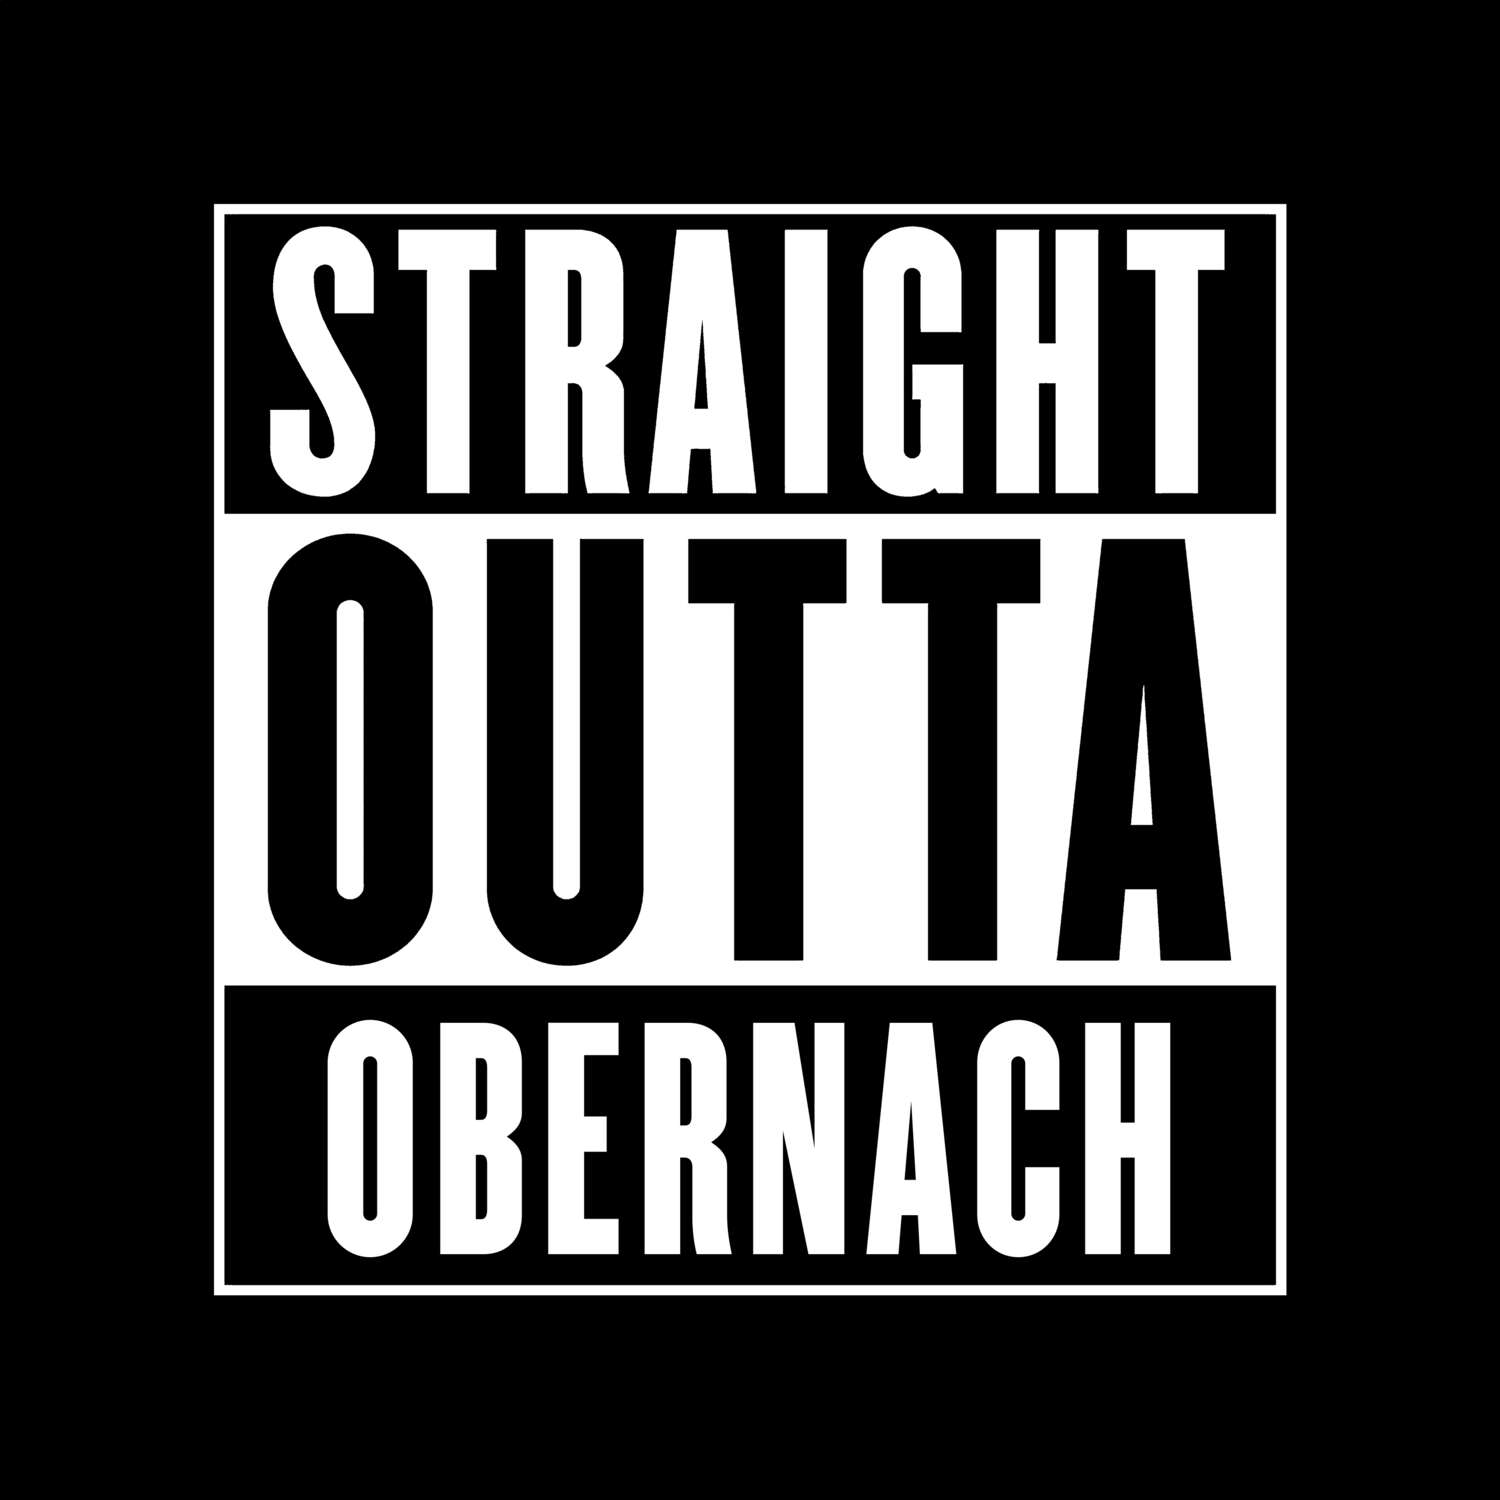 Obernach T-Shirt »Straight Outta«